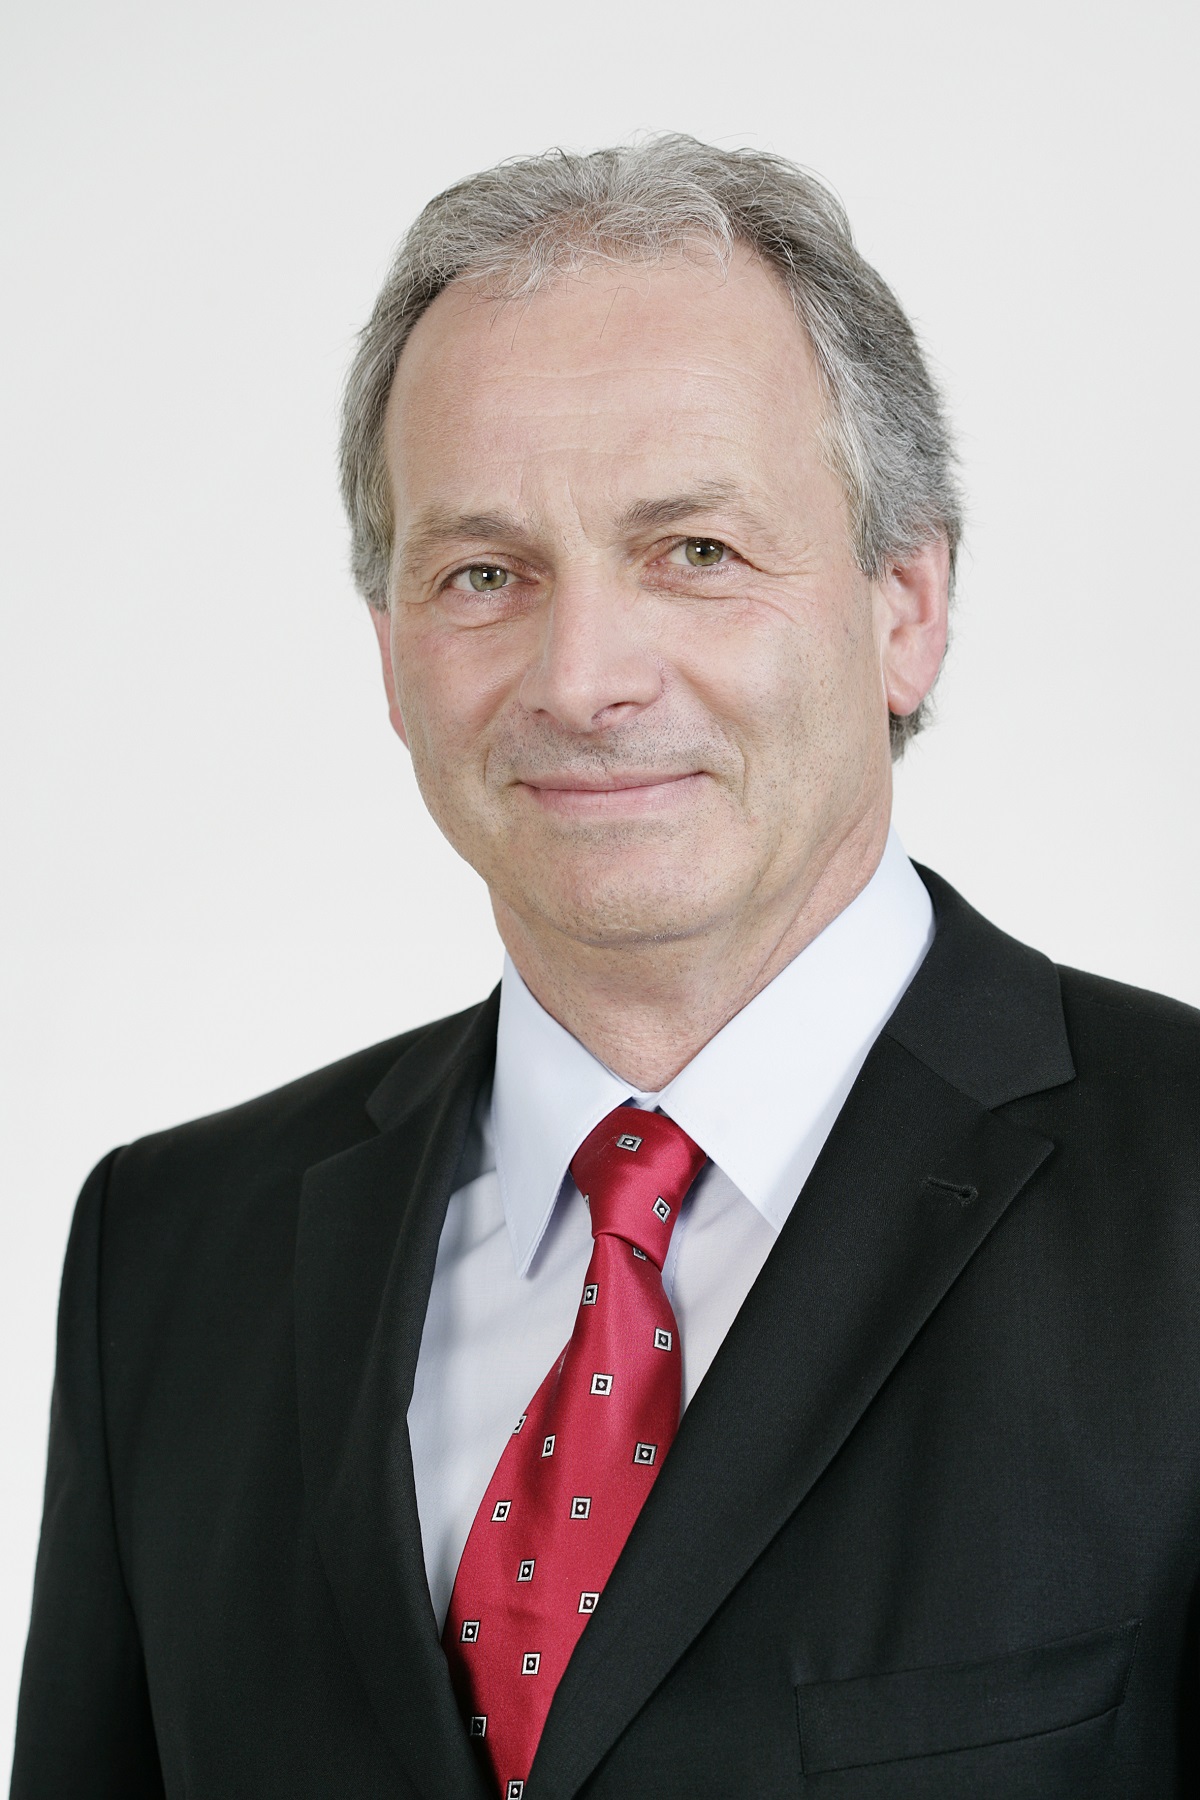 Michael Rindlisbacher übernimmt Verwaltungsrats-Präsidium von Centris